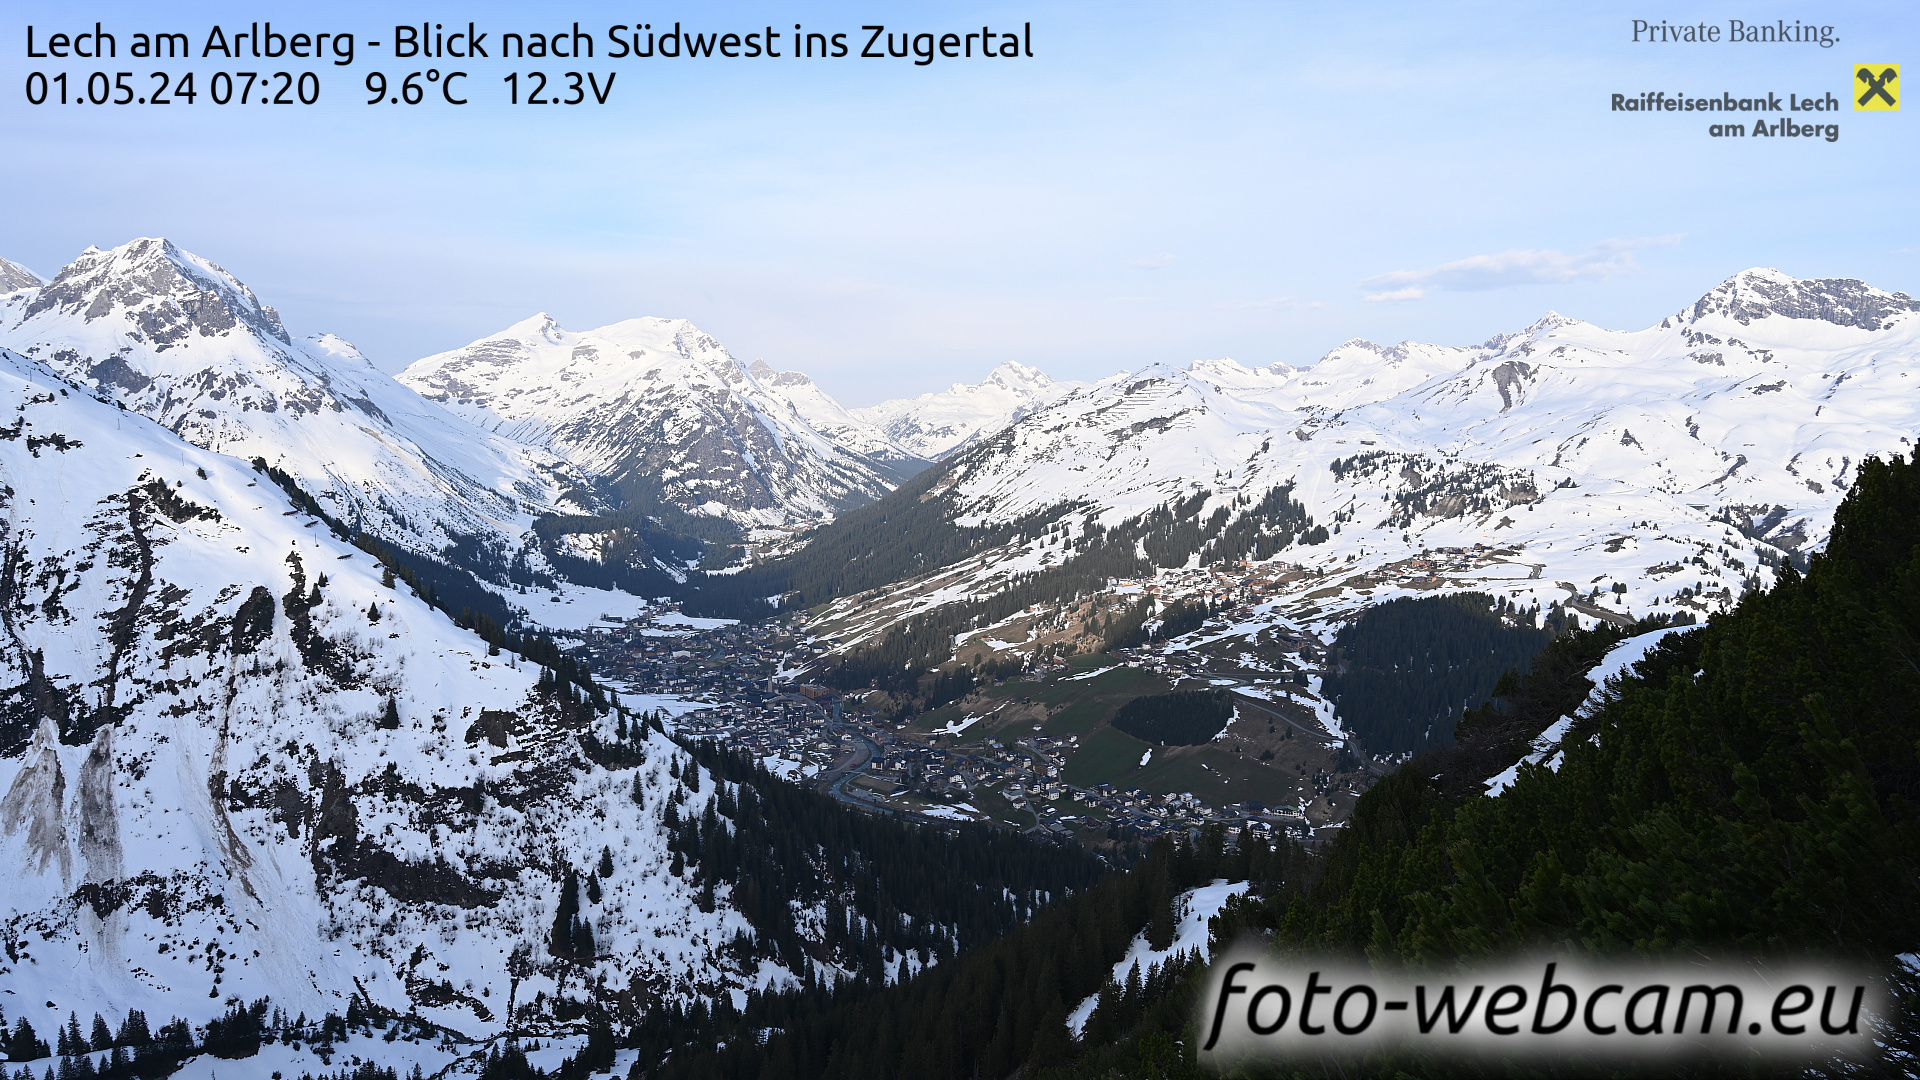 Lech am Arlberg Tue. 07:31